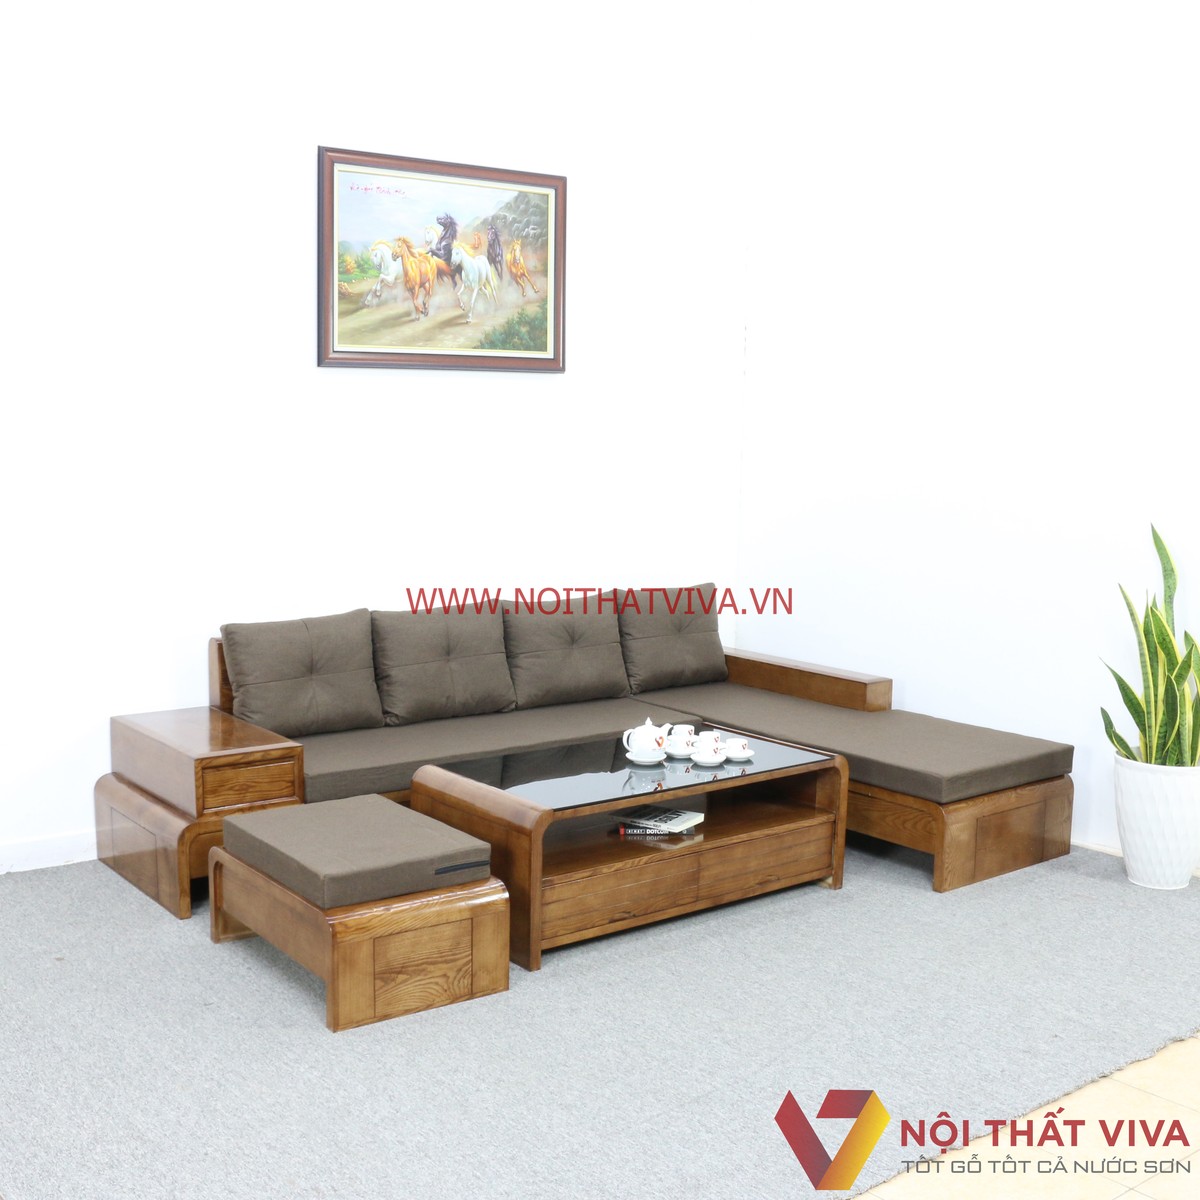 Một chiếc sofa gỗ có nệm hiện đại sẽ là điểm nhấn cho căn phòng của bạn. Với những đường nét tinh tế, màu sắc bắt mắt cùng nệm đệm tiên tiến, chiếc sofa này sẽ khiến không gian phòng khách của bạn thật sự đặc biệt và sang trọng hơn.